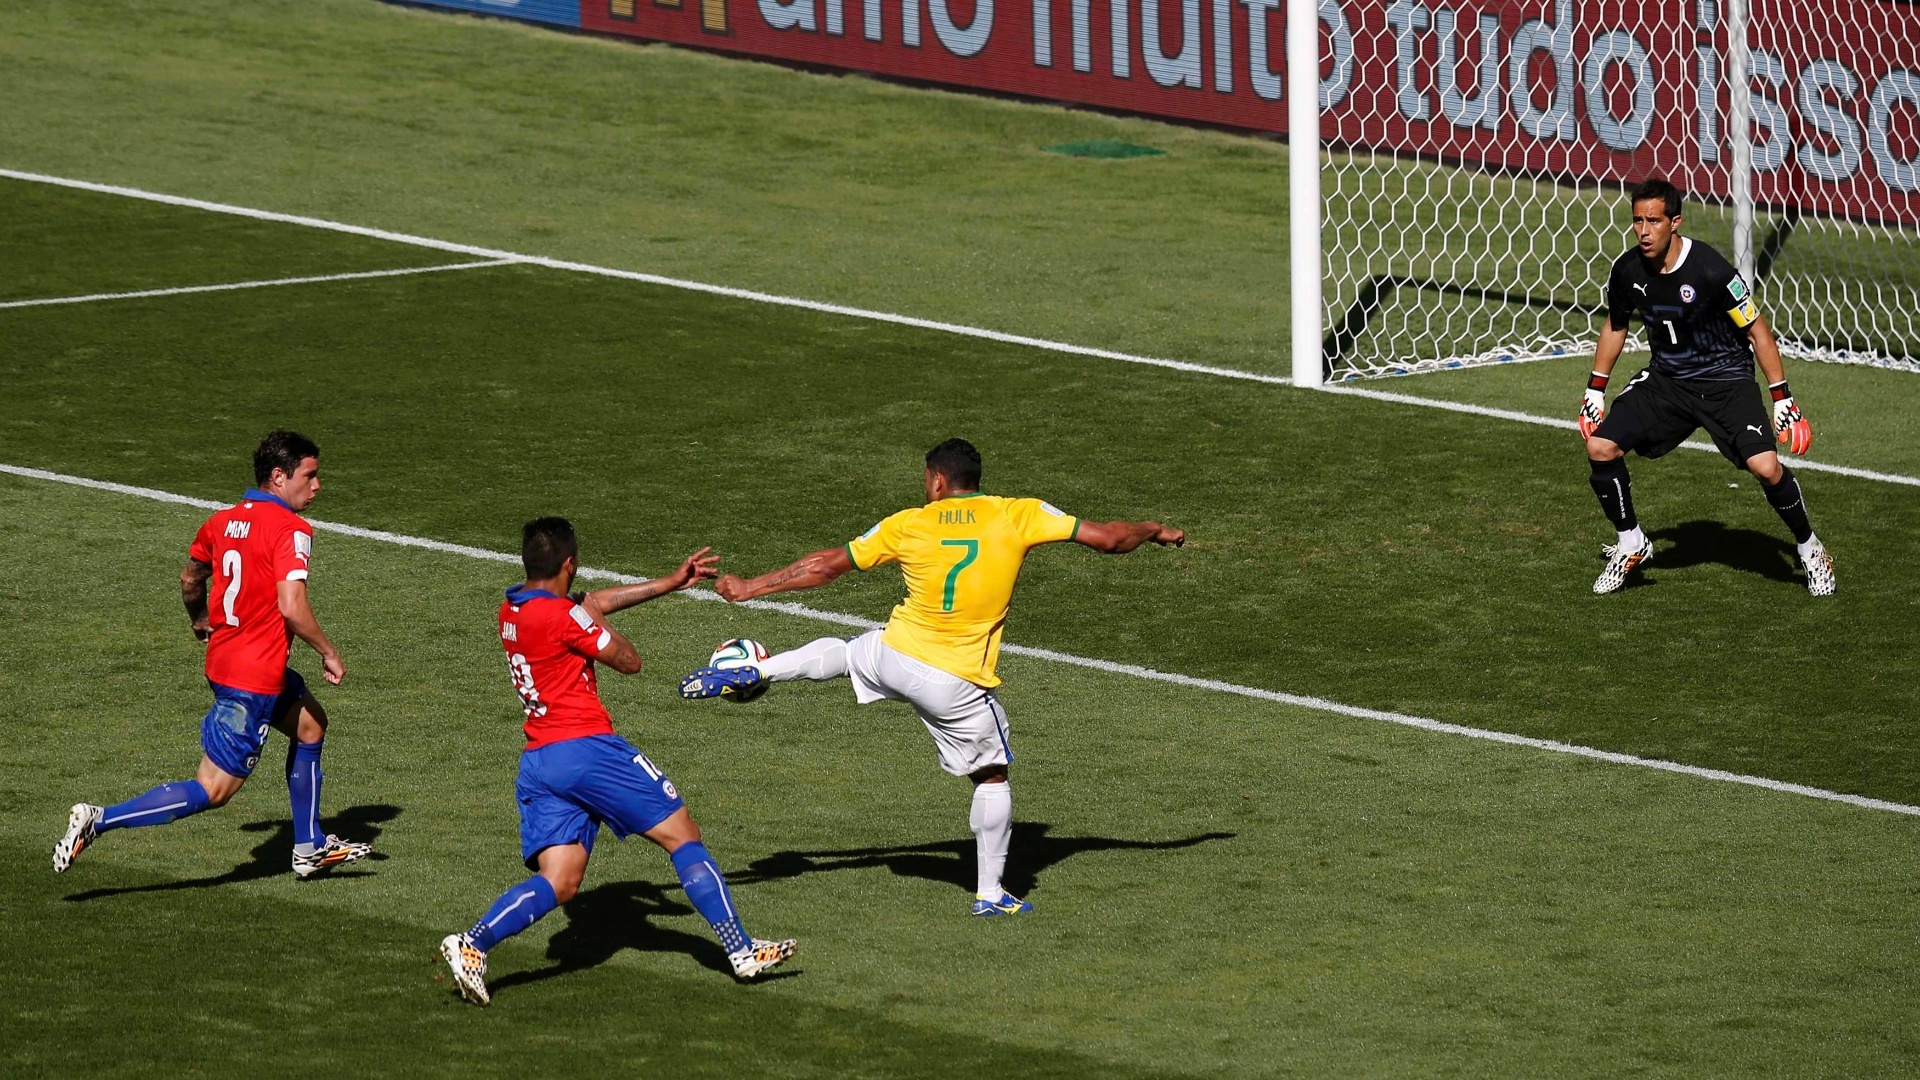 Hulk finaliza e marca no segundo tempo contra o Chile, mas o gol é anulado pela arbitram no Mineirão